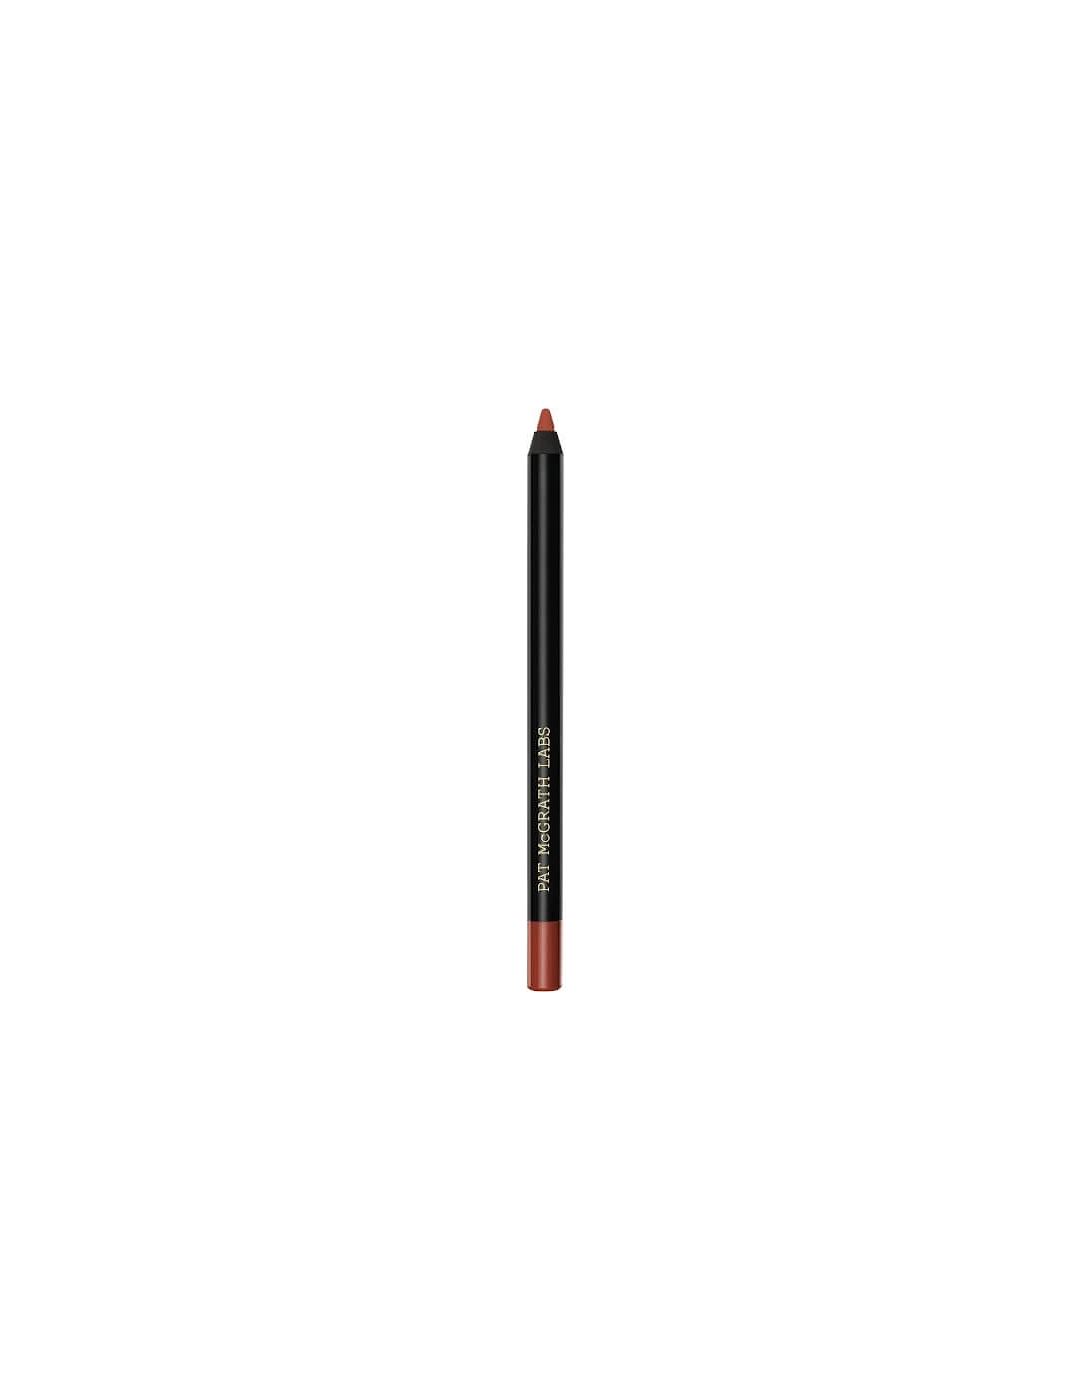 PermaGel Ultra Lip Pencil - Buff, 2 of 1